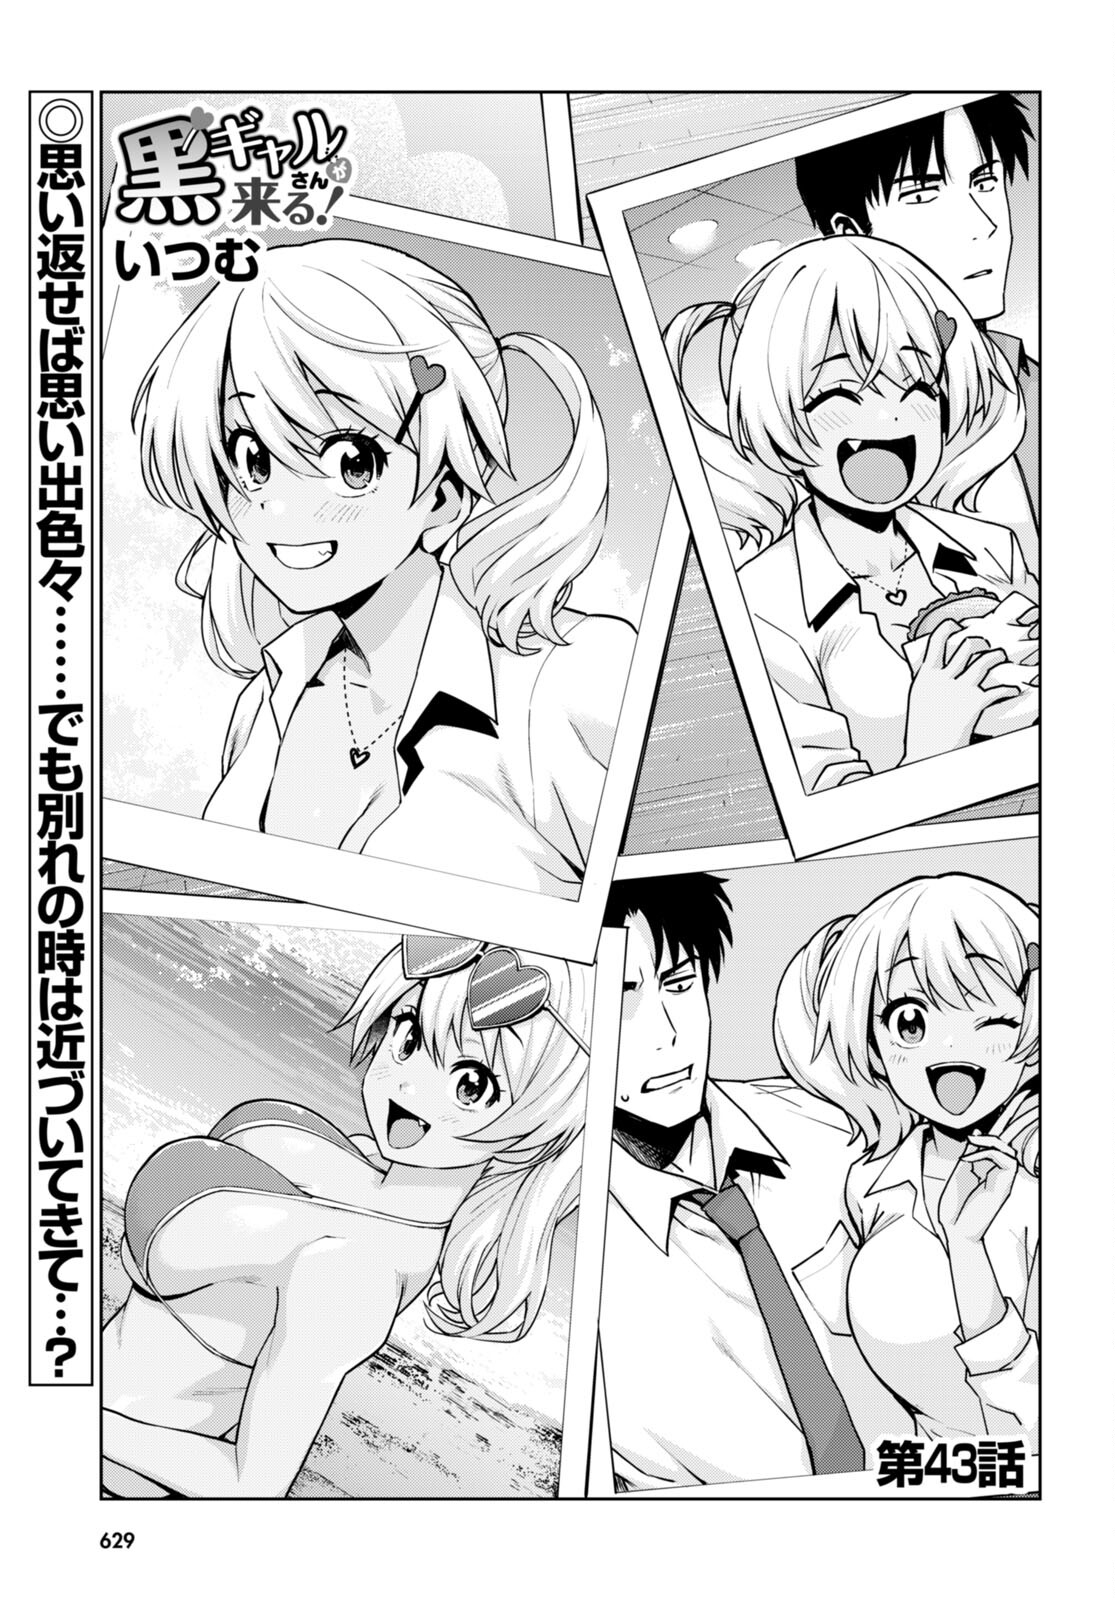 Kuro Gyaru-san ga Kuru! - Chapter 43 - Page 1